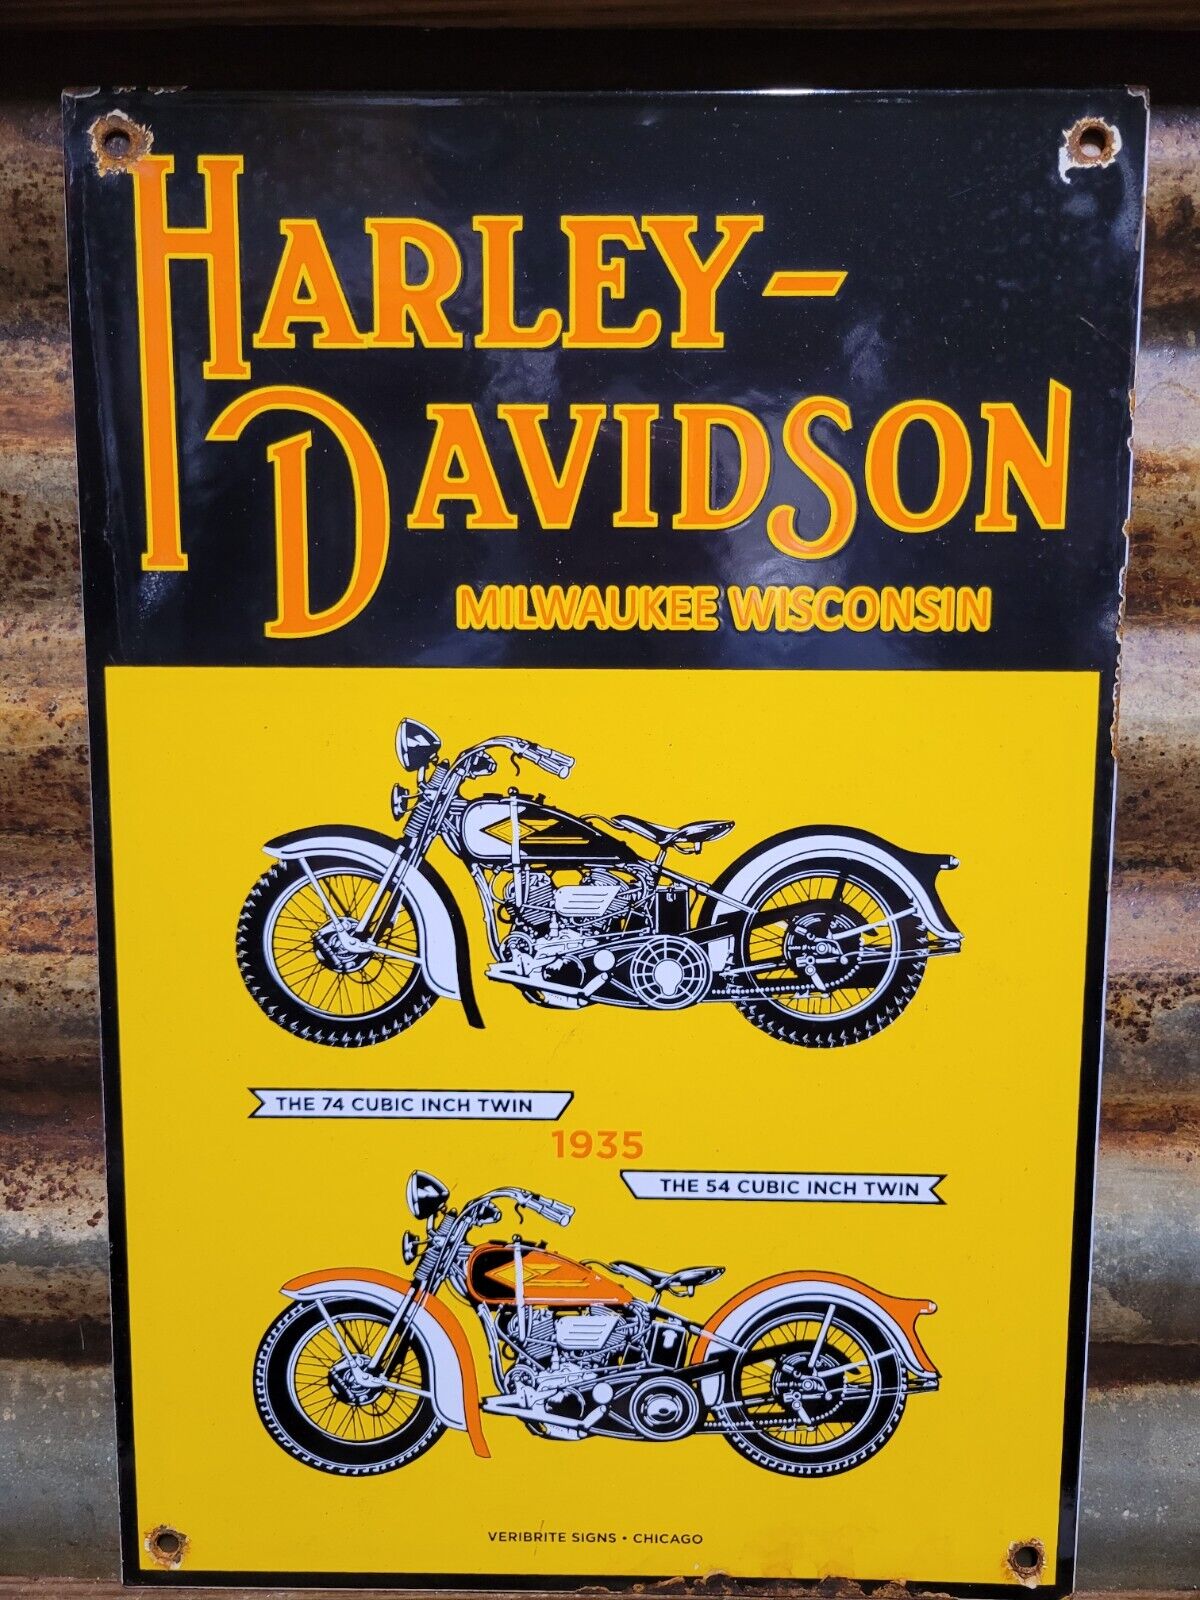 VINTAGE HARLEY DAVIDSON PORCELAIN SIGN MOTORCYCLE SERVICE SALES VERIBRITE DEALER